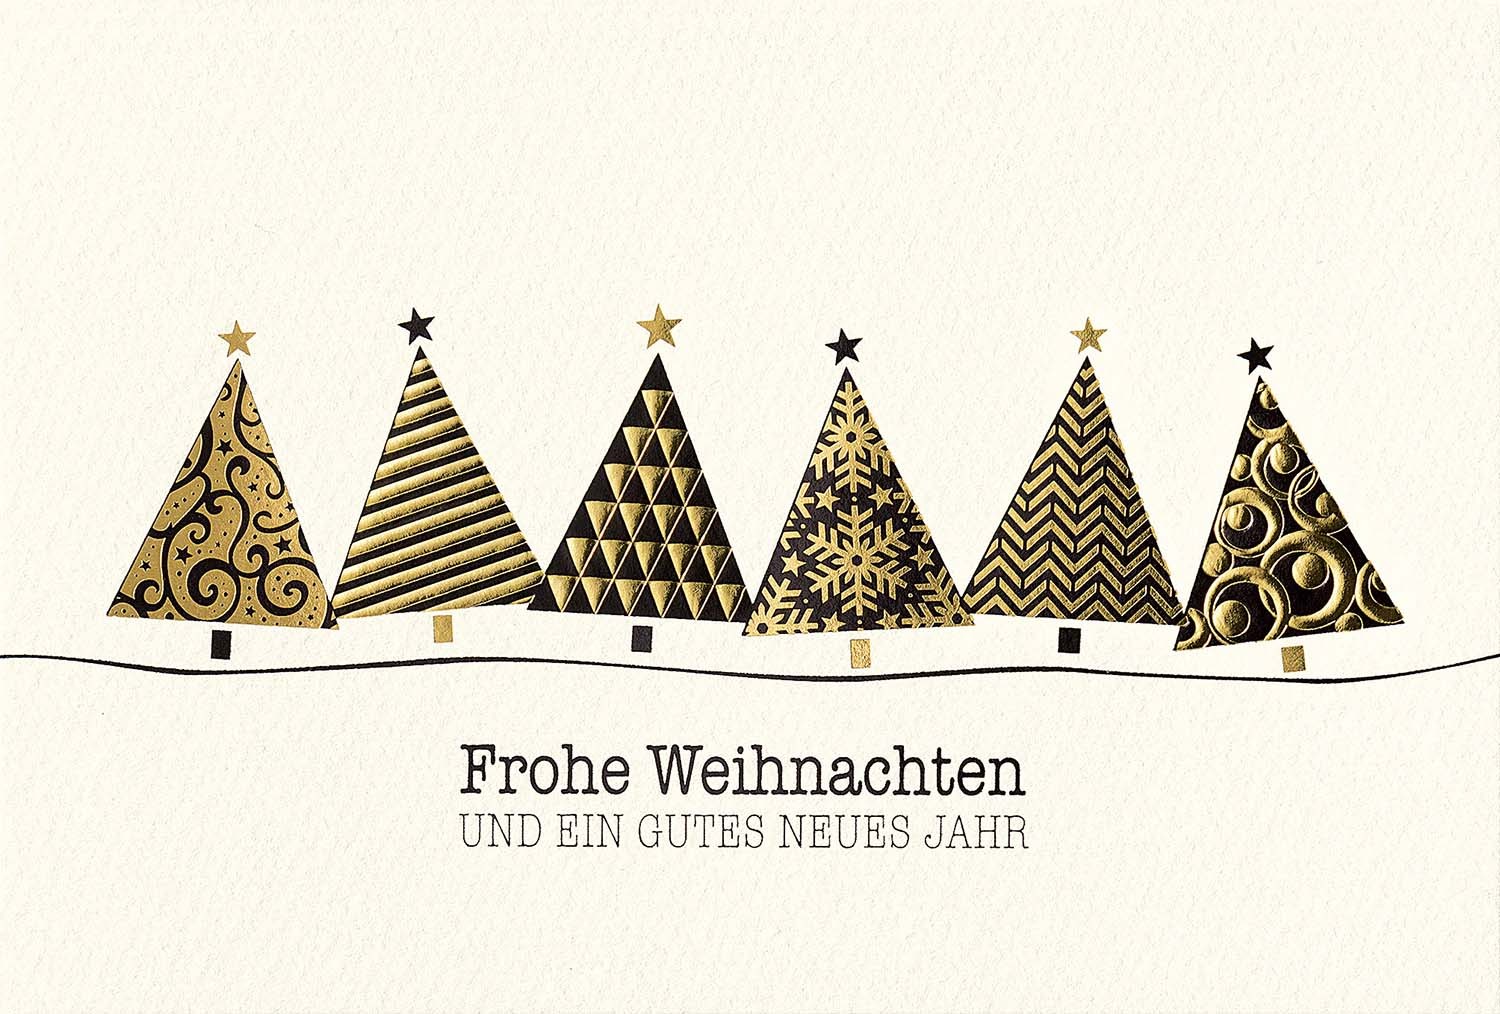 Weihnachtskarte Mit Modernen Weihnachtsbaumen In Schwaz Gold Weihnachten Weihnachtskarten Moderne Weihnachtskarten Alle Karten De